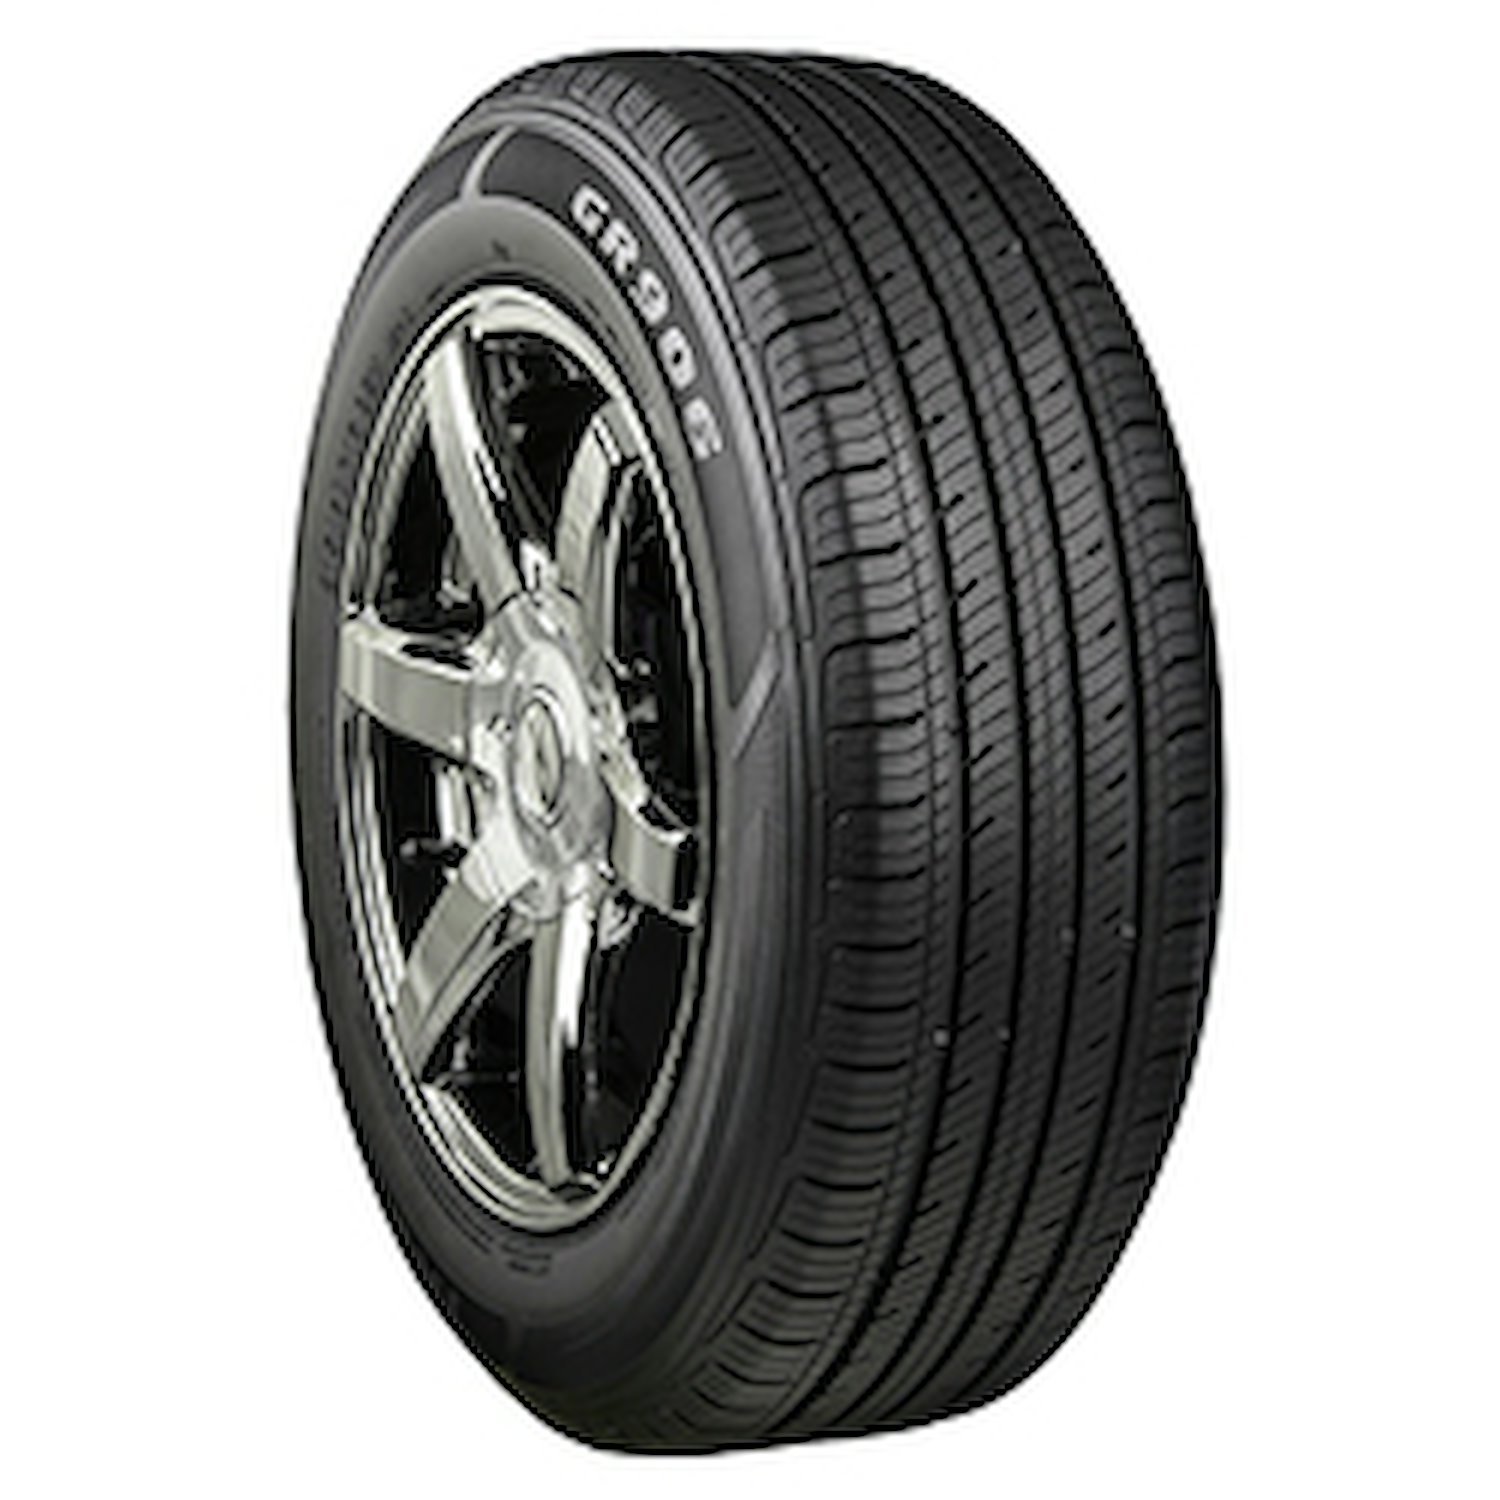 GR906 Tire, 235/55R17 99H